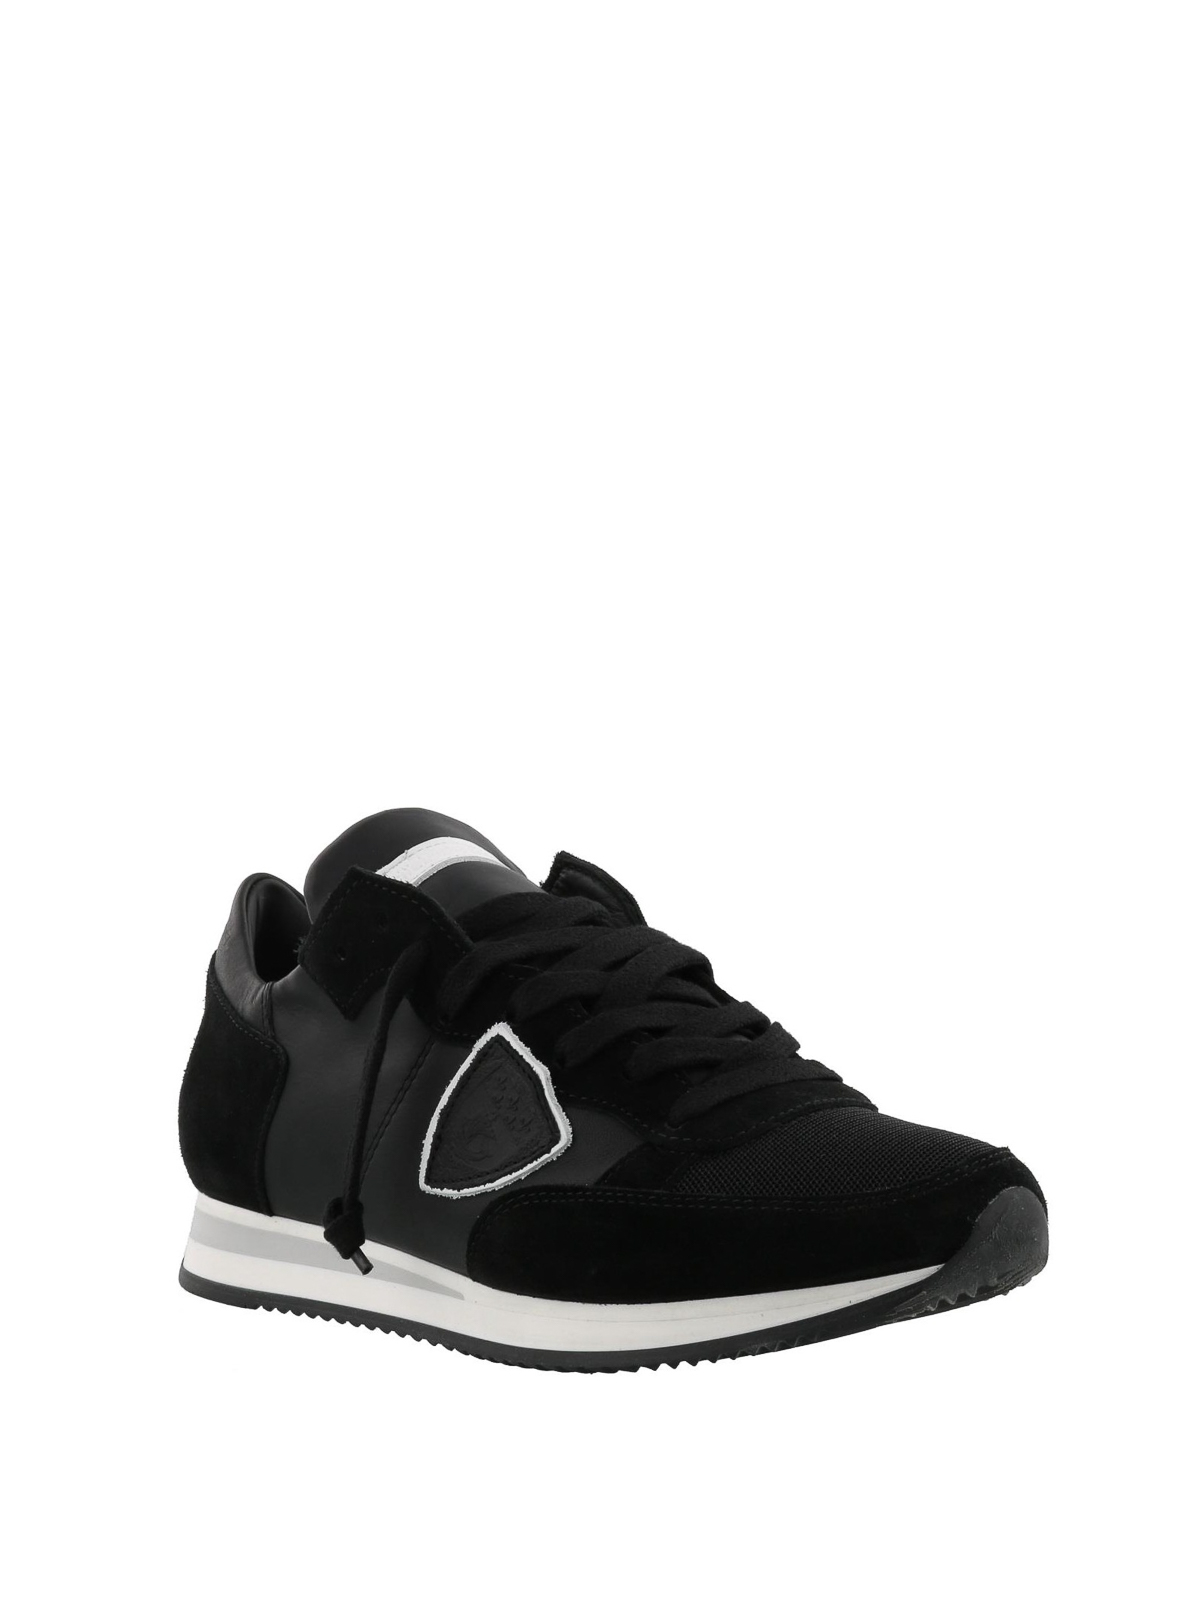 Philippe Model - Sneaker Tropez nere in pelle - sneakers - TRLD5004